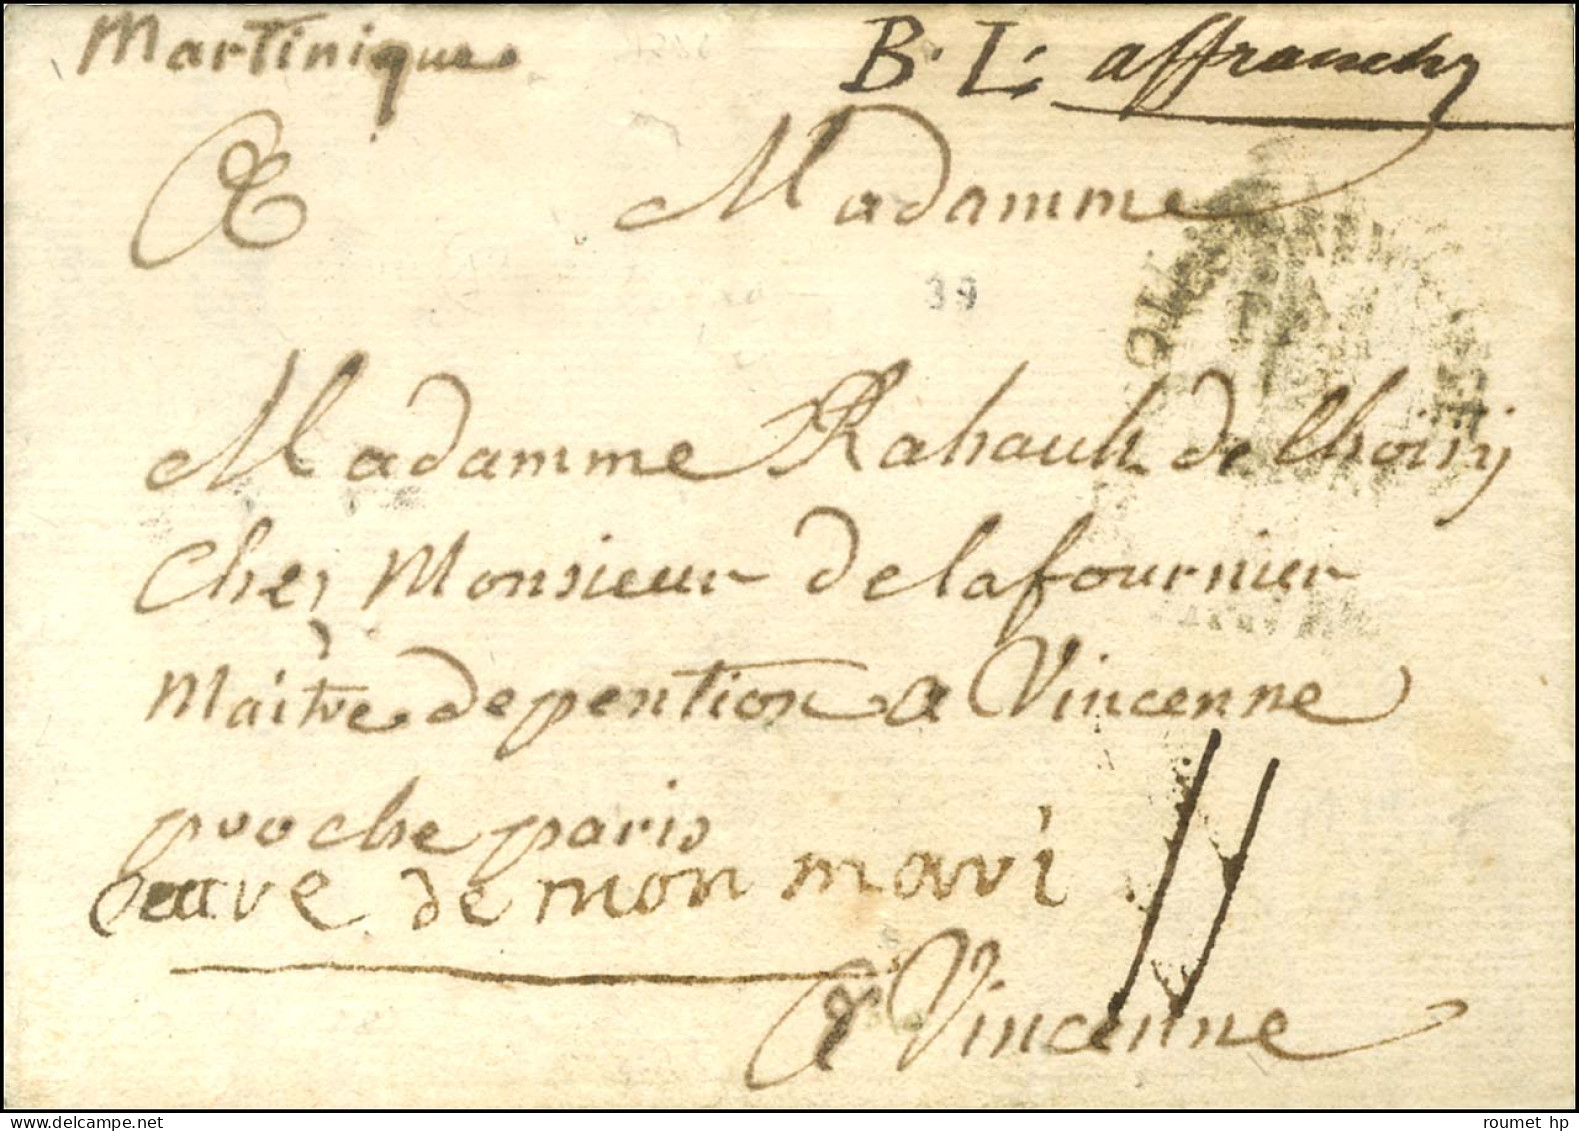 Lettre Avec Texte Daté Au Lamentin Ile Martinique Le 20 Décembre 1787 Pour Vincennes. Au Recto, Très Rare Mention Manusc - Maritieme Post